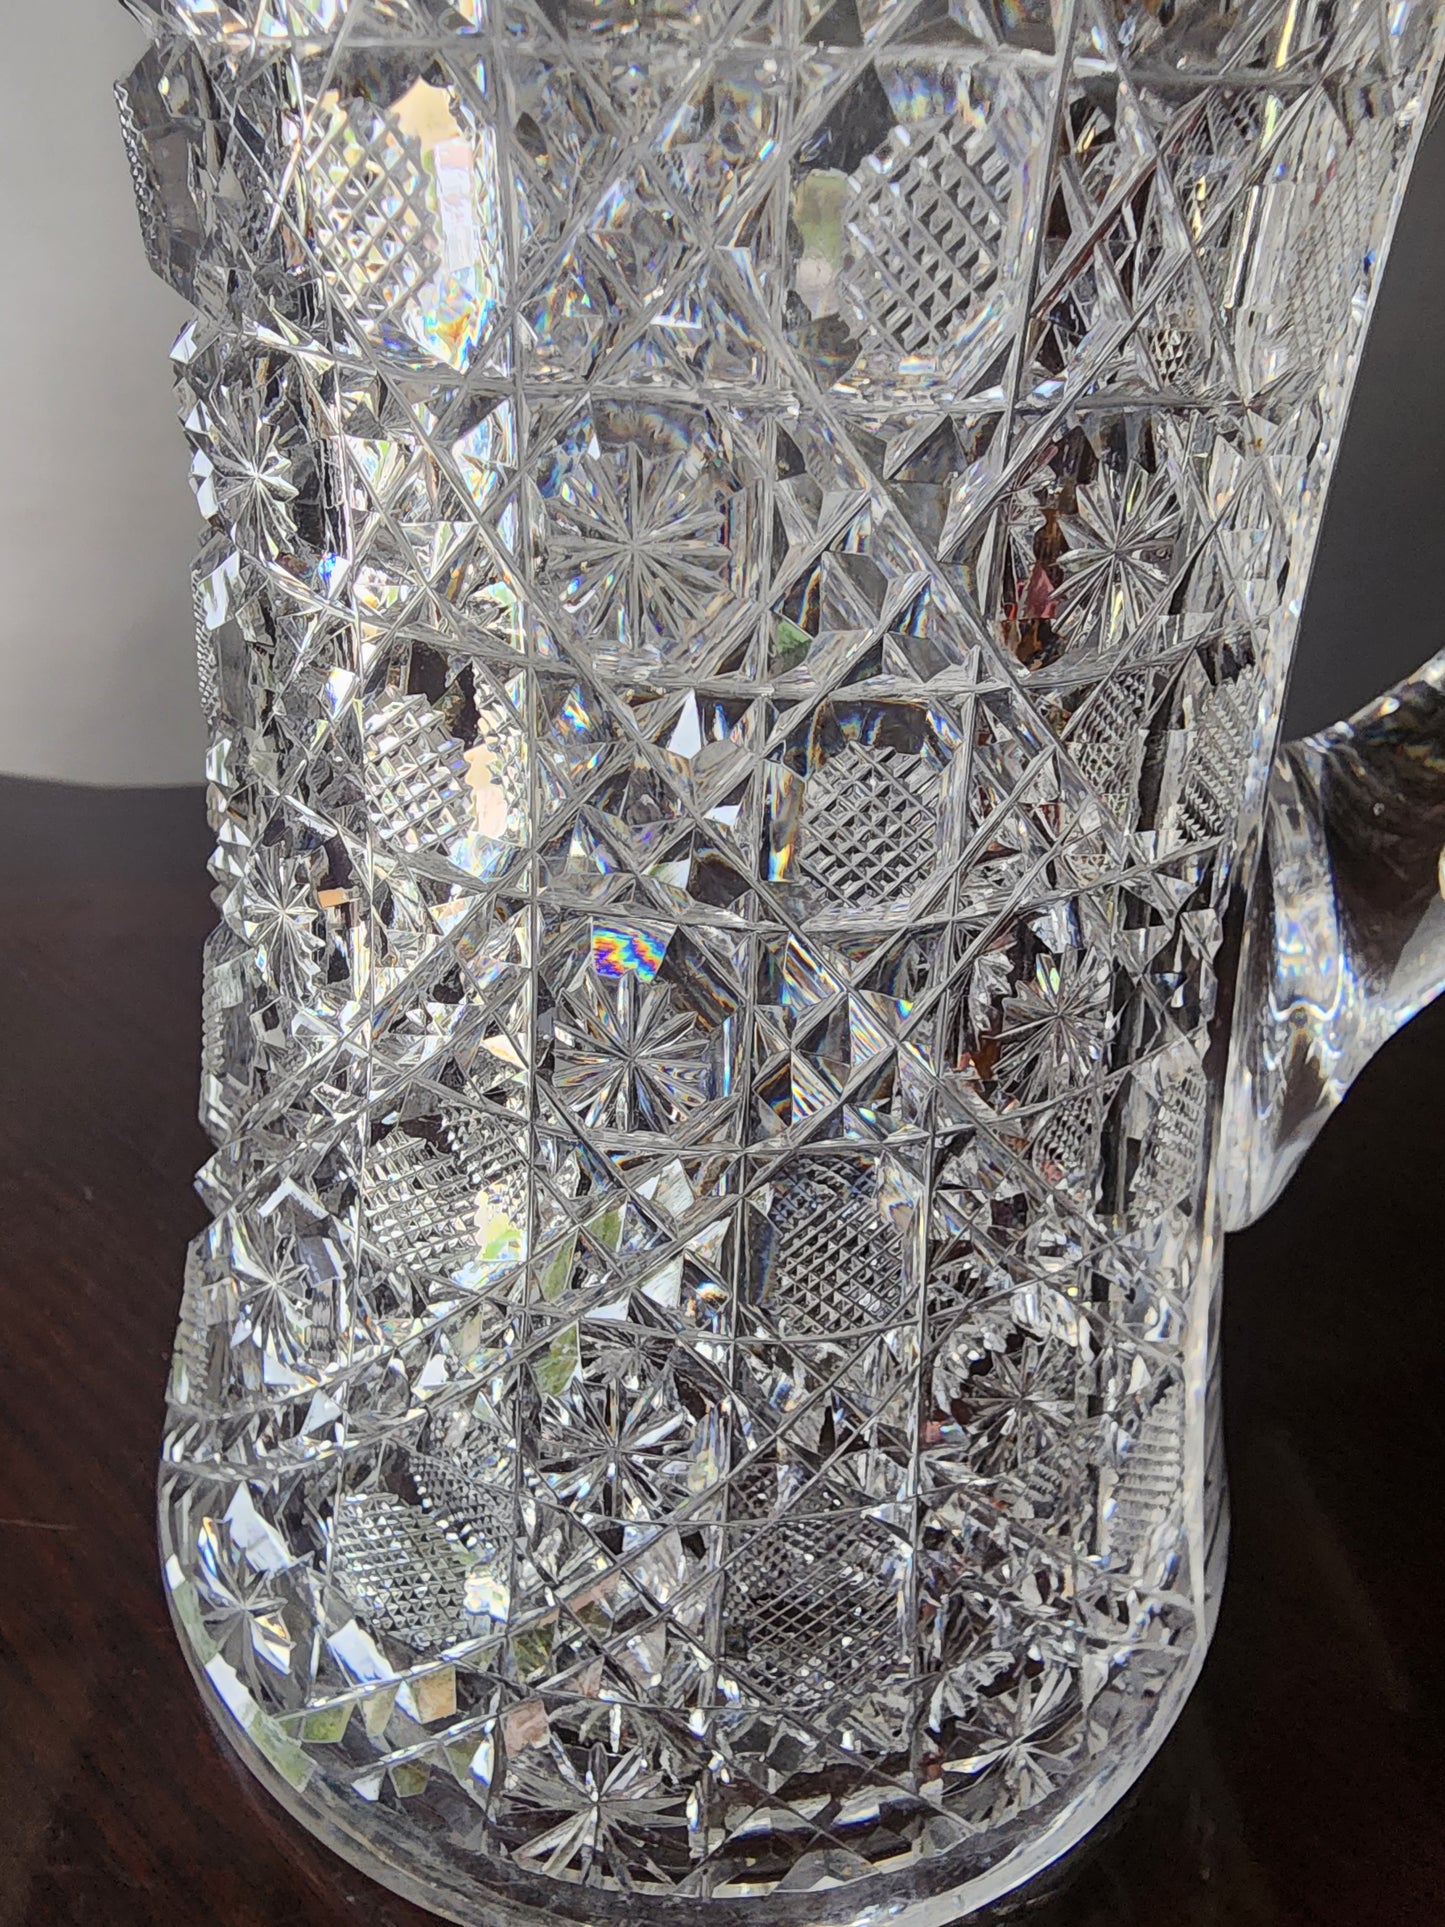 American Brilliant Period Cut Glass pitcher Antique Harvard